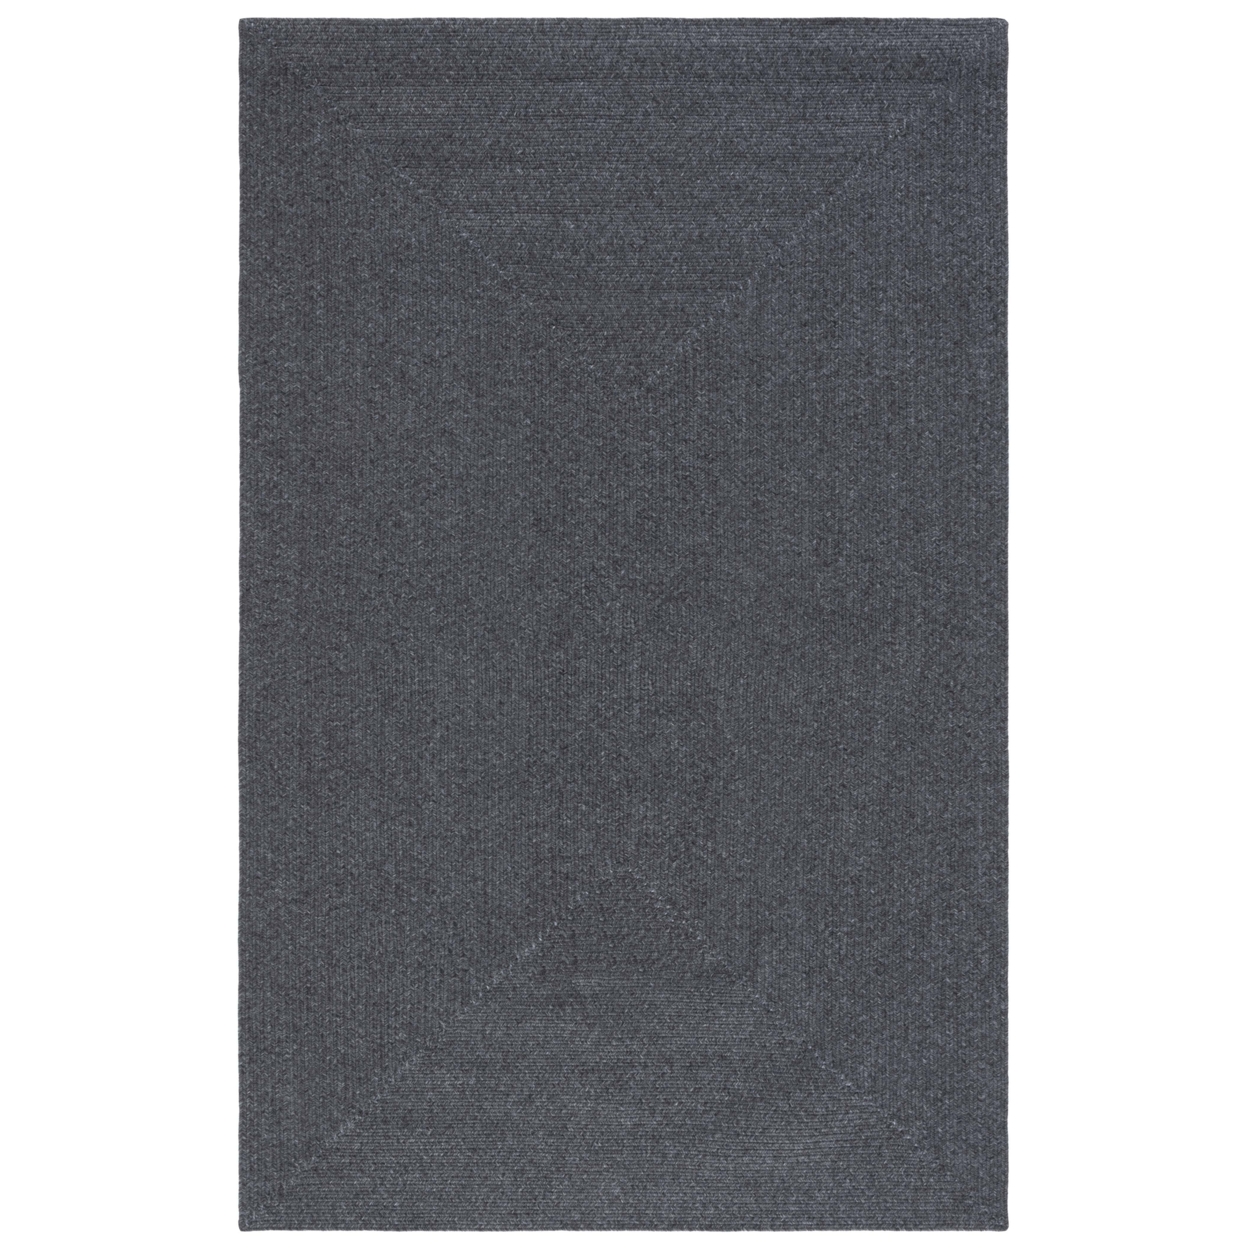 SAFAVIEH BRA201Z Braided Black - Ivory / Grey, 9' X 12' Rectangle